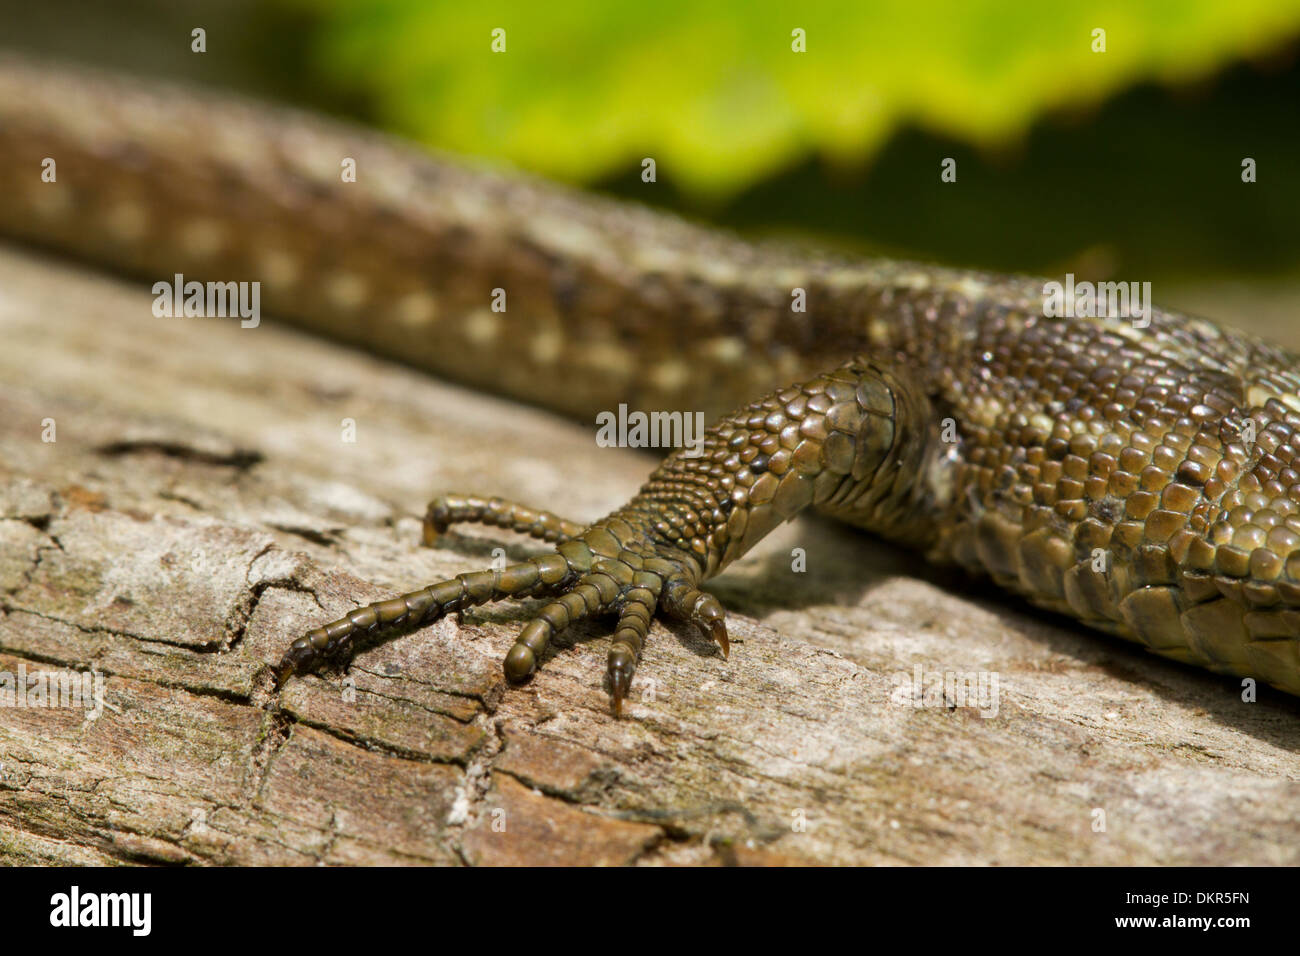 Lézard vivipare ou commun (Zootoca vivipara) close-up de la patte d'une femelle adulte au soleil sur un journal. Banque D'Images